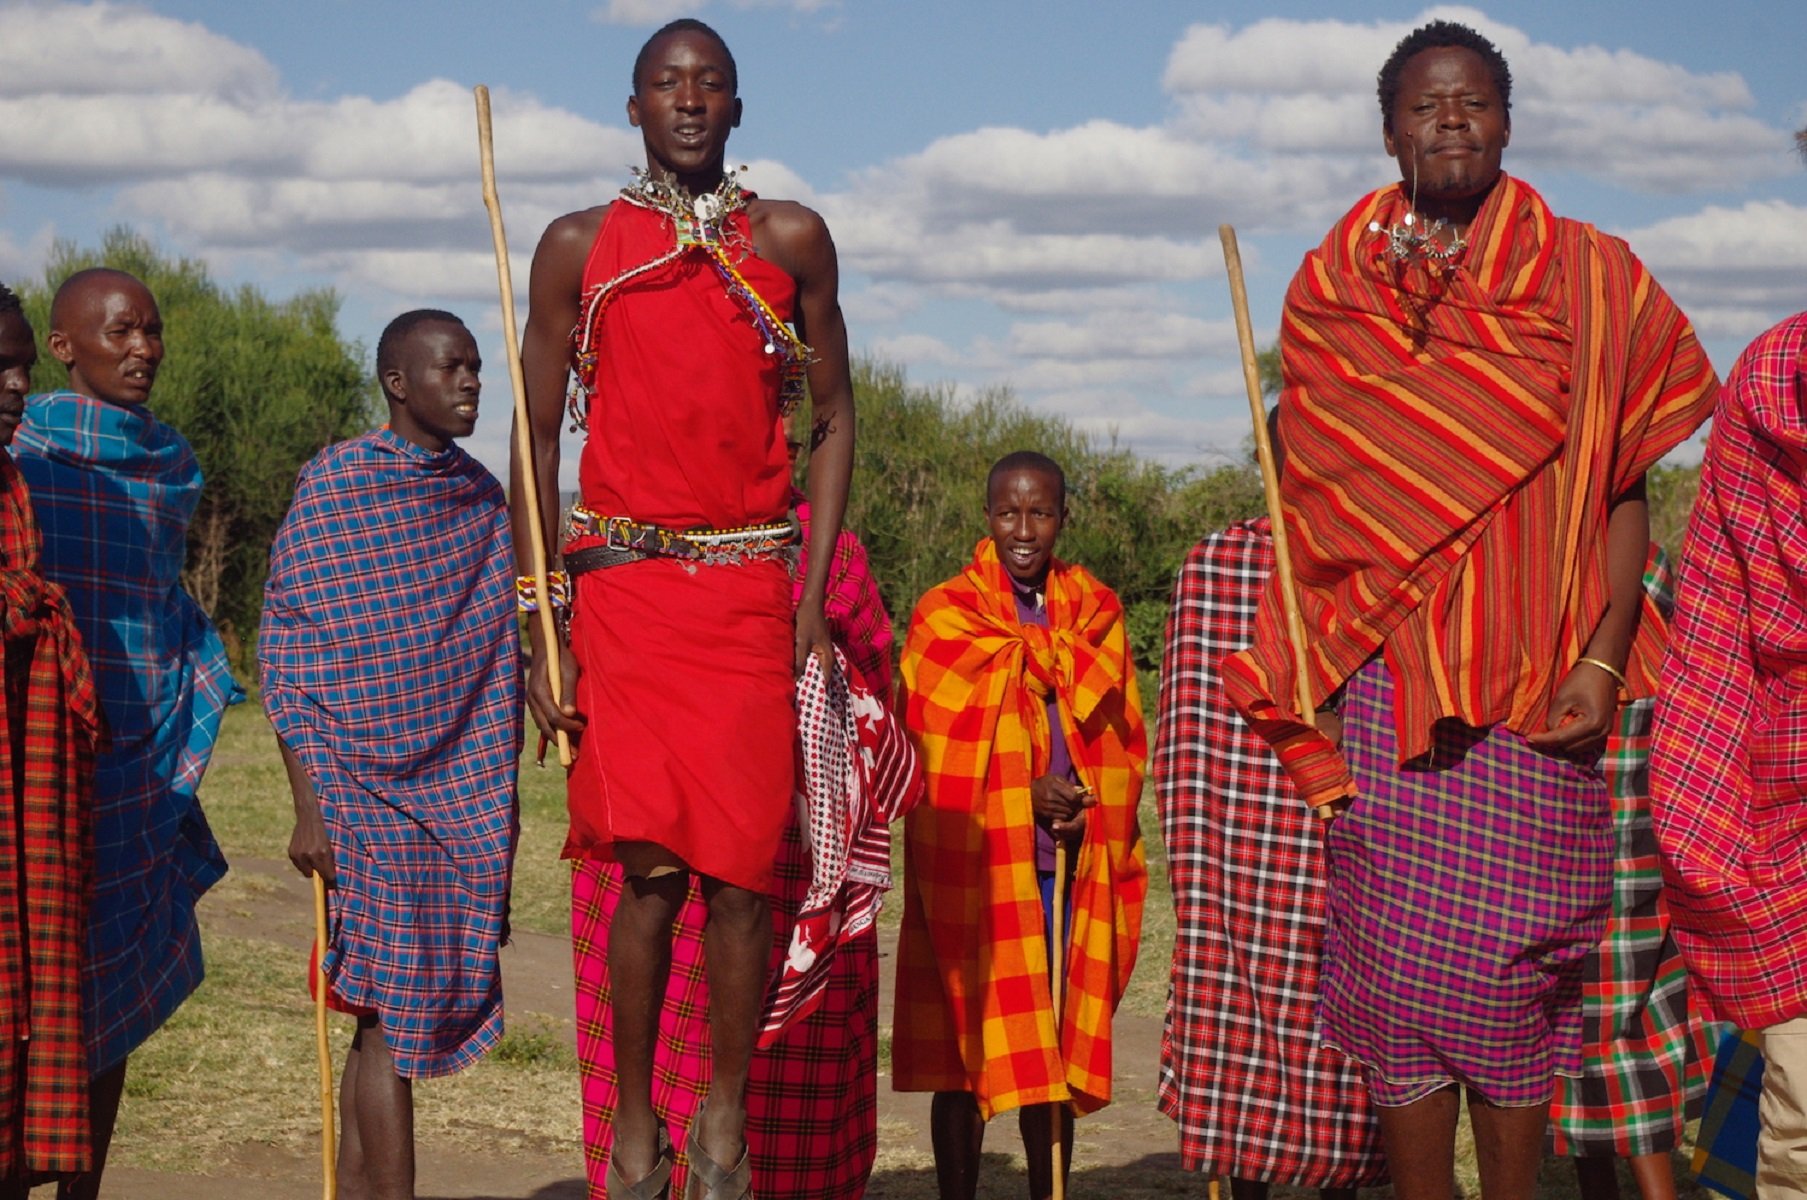 VÍDEO | El montaje que relaciona a Josep Bou con los masai